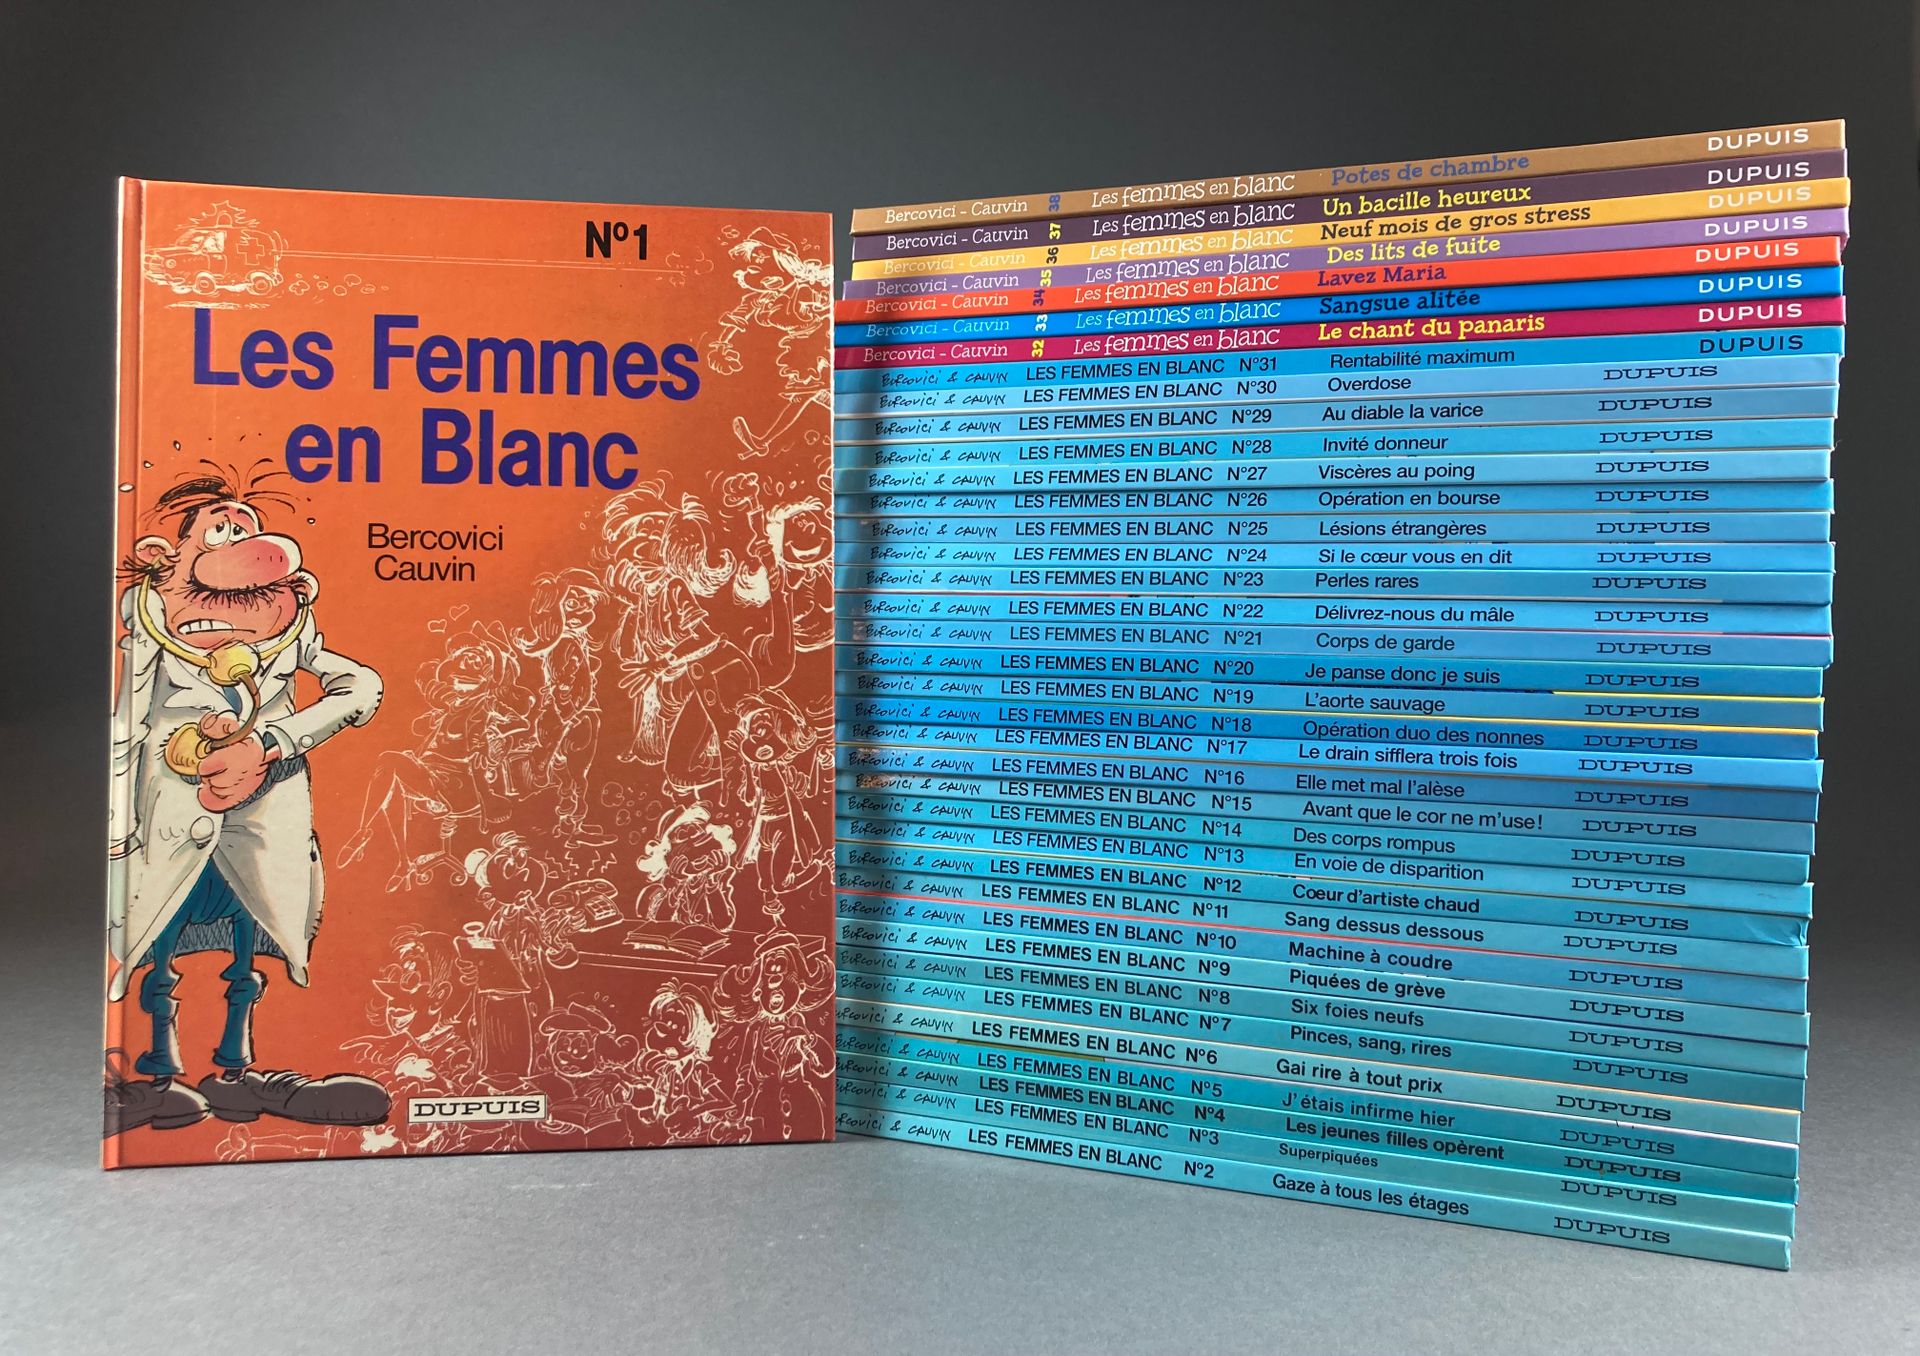 Bercovici - Femmes en blanc (Les) Bände 1 bis 38, von Femmes en blanc (1986) bis&hellip;